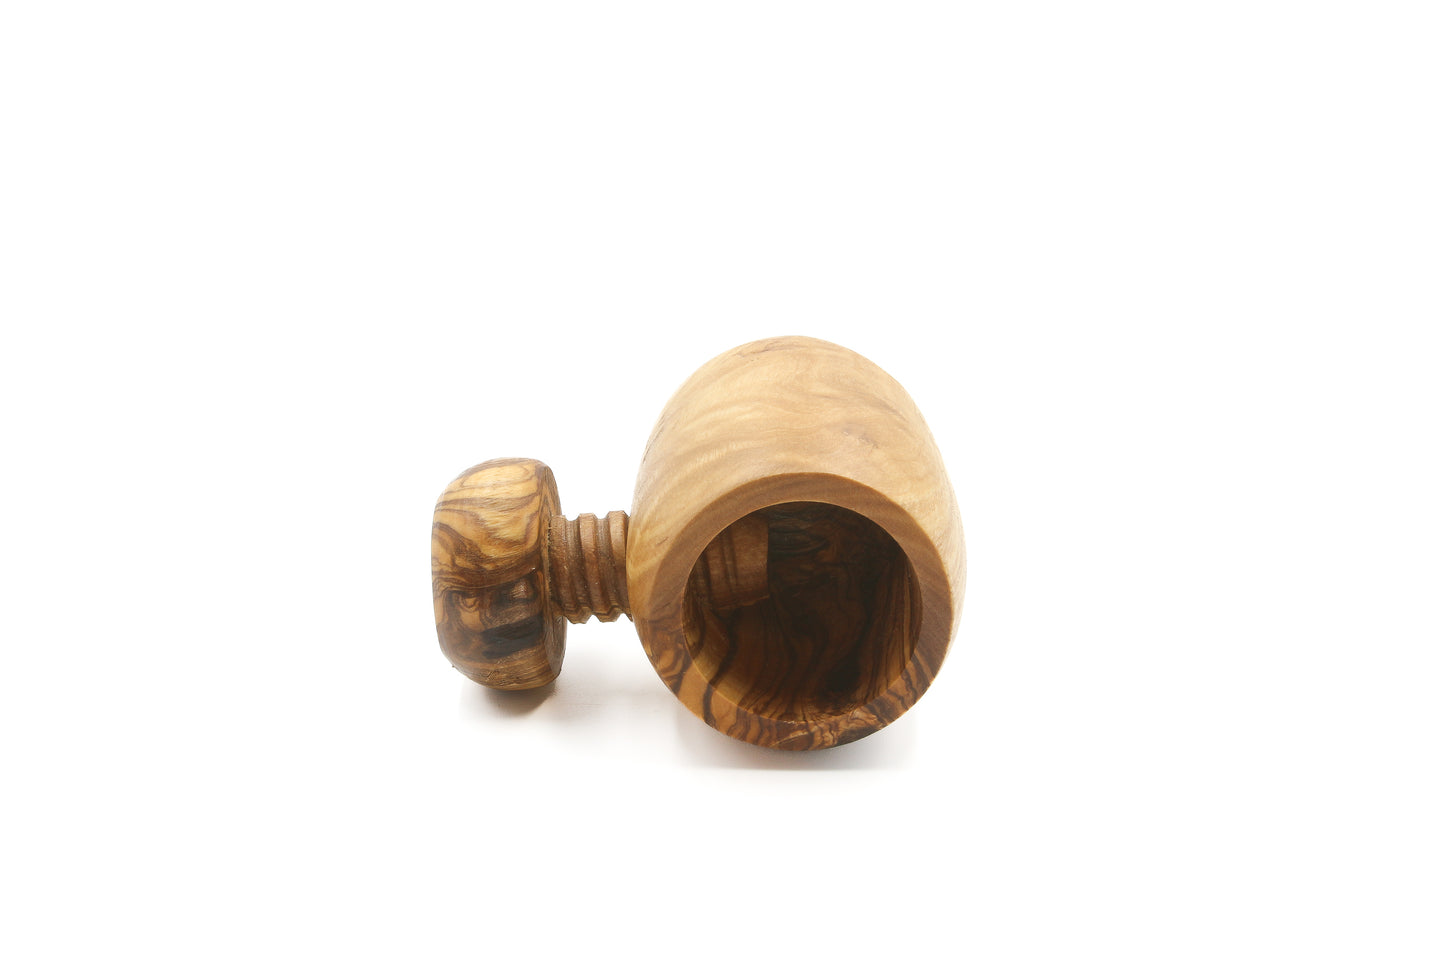 Elegant olive wood nutcracker for enjoying your favorite nuts